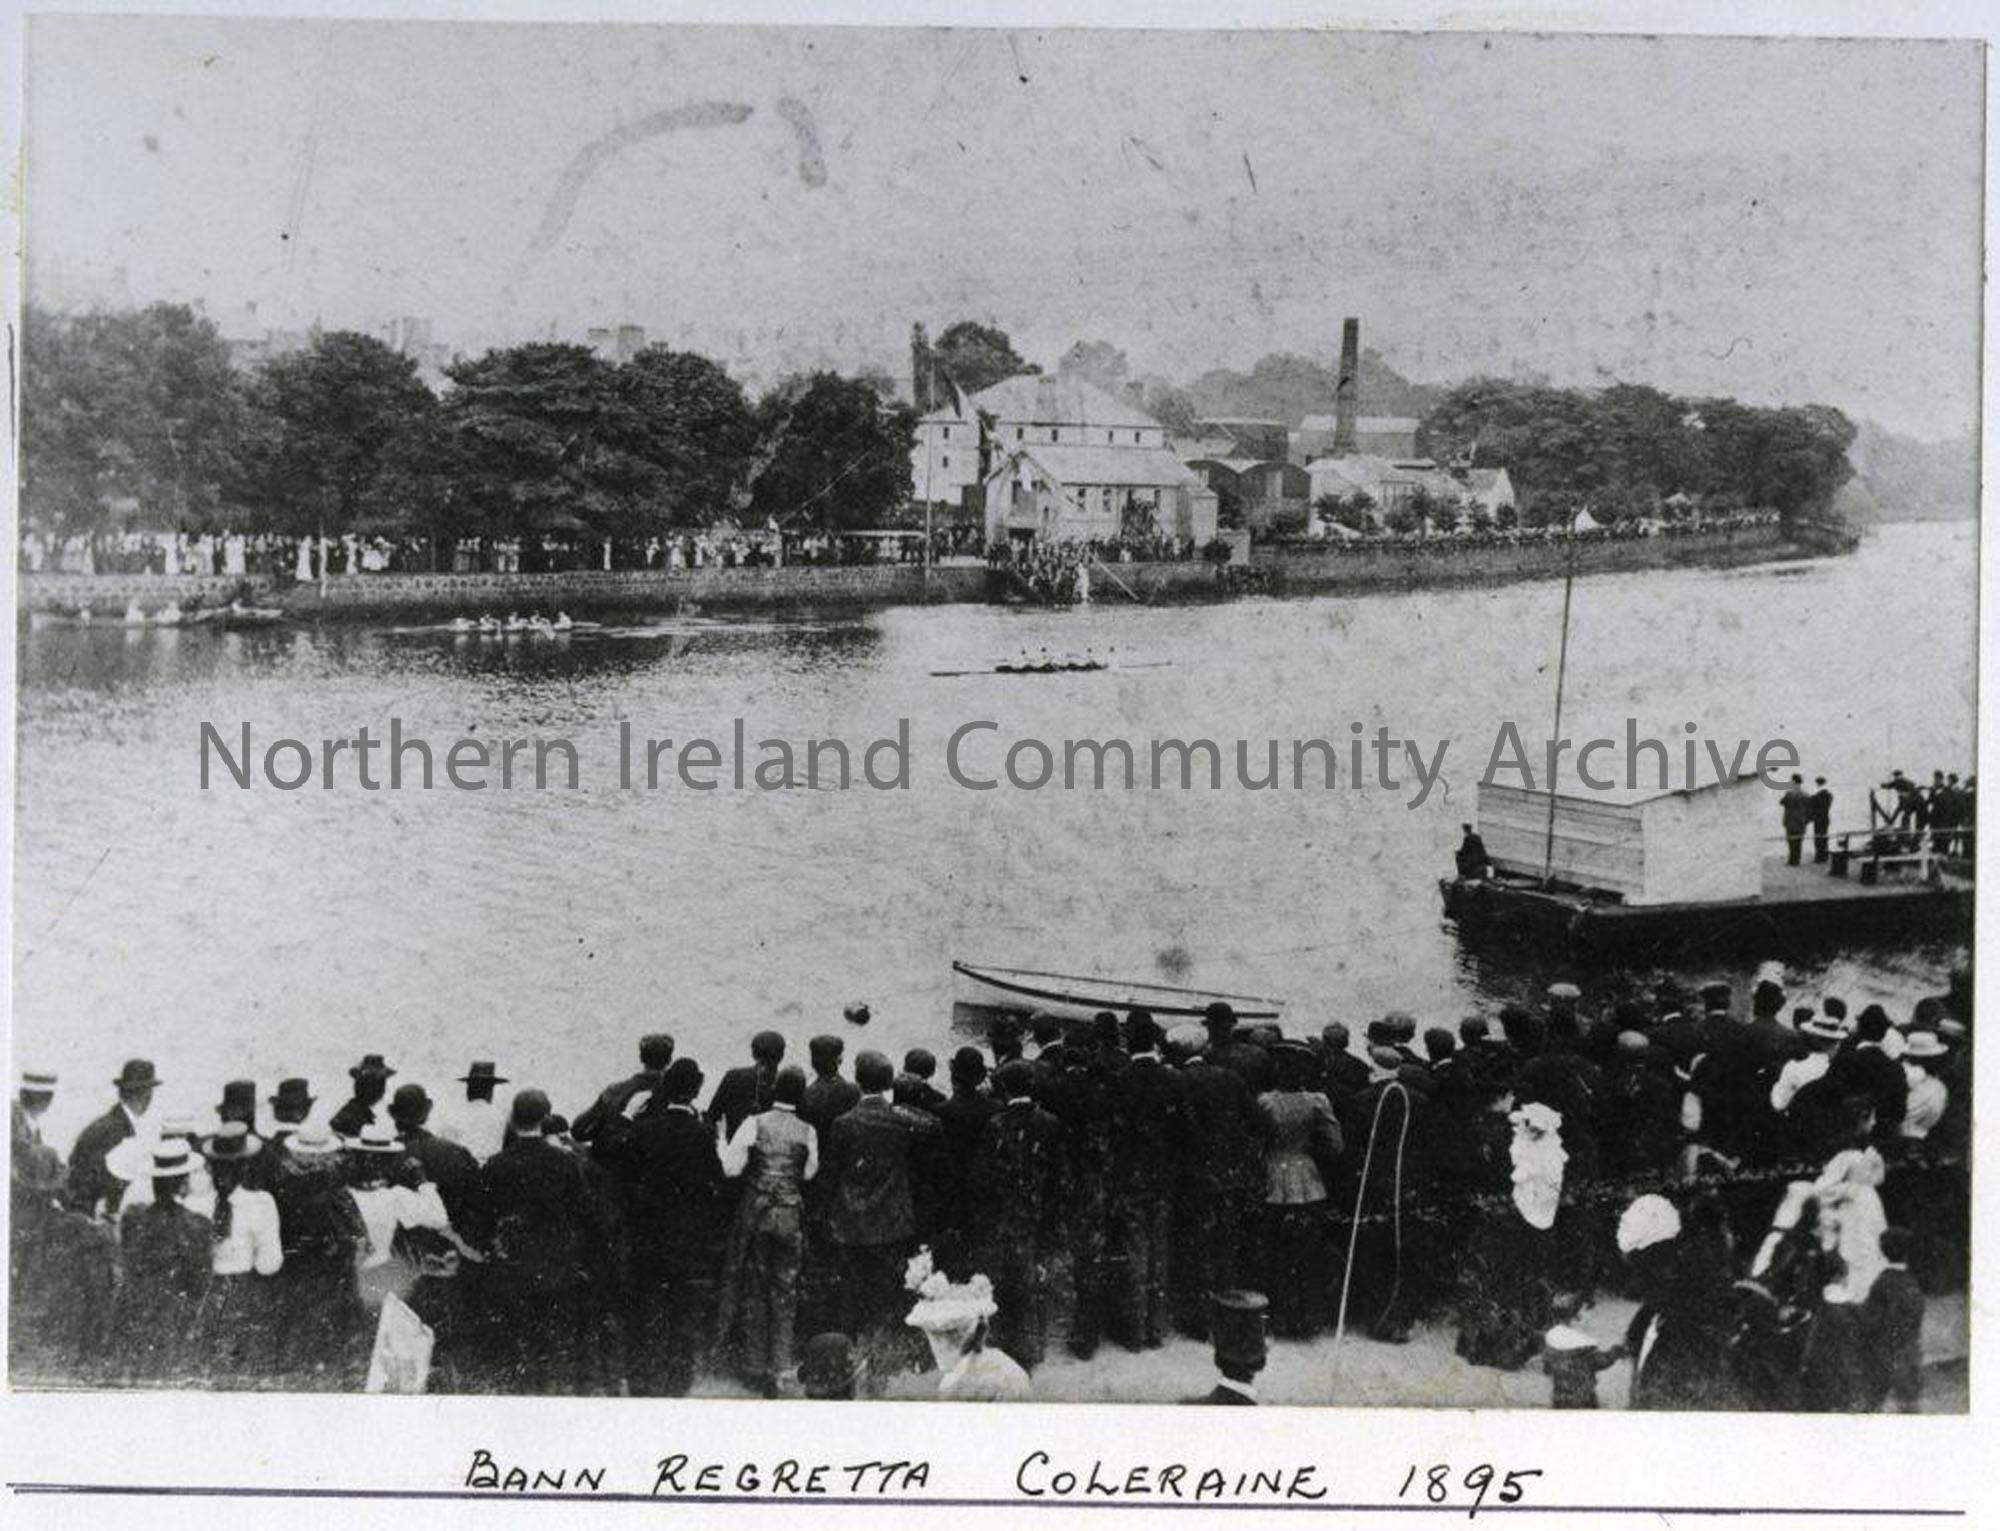 Bann Regatta Coleraine 1895